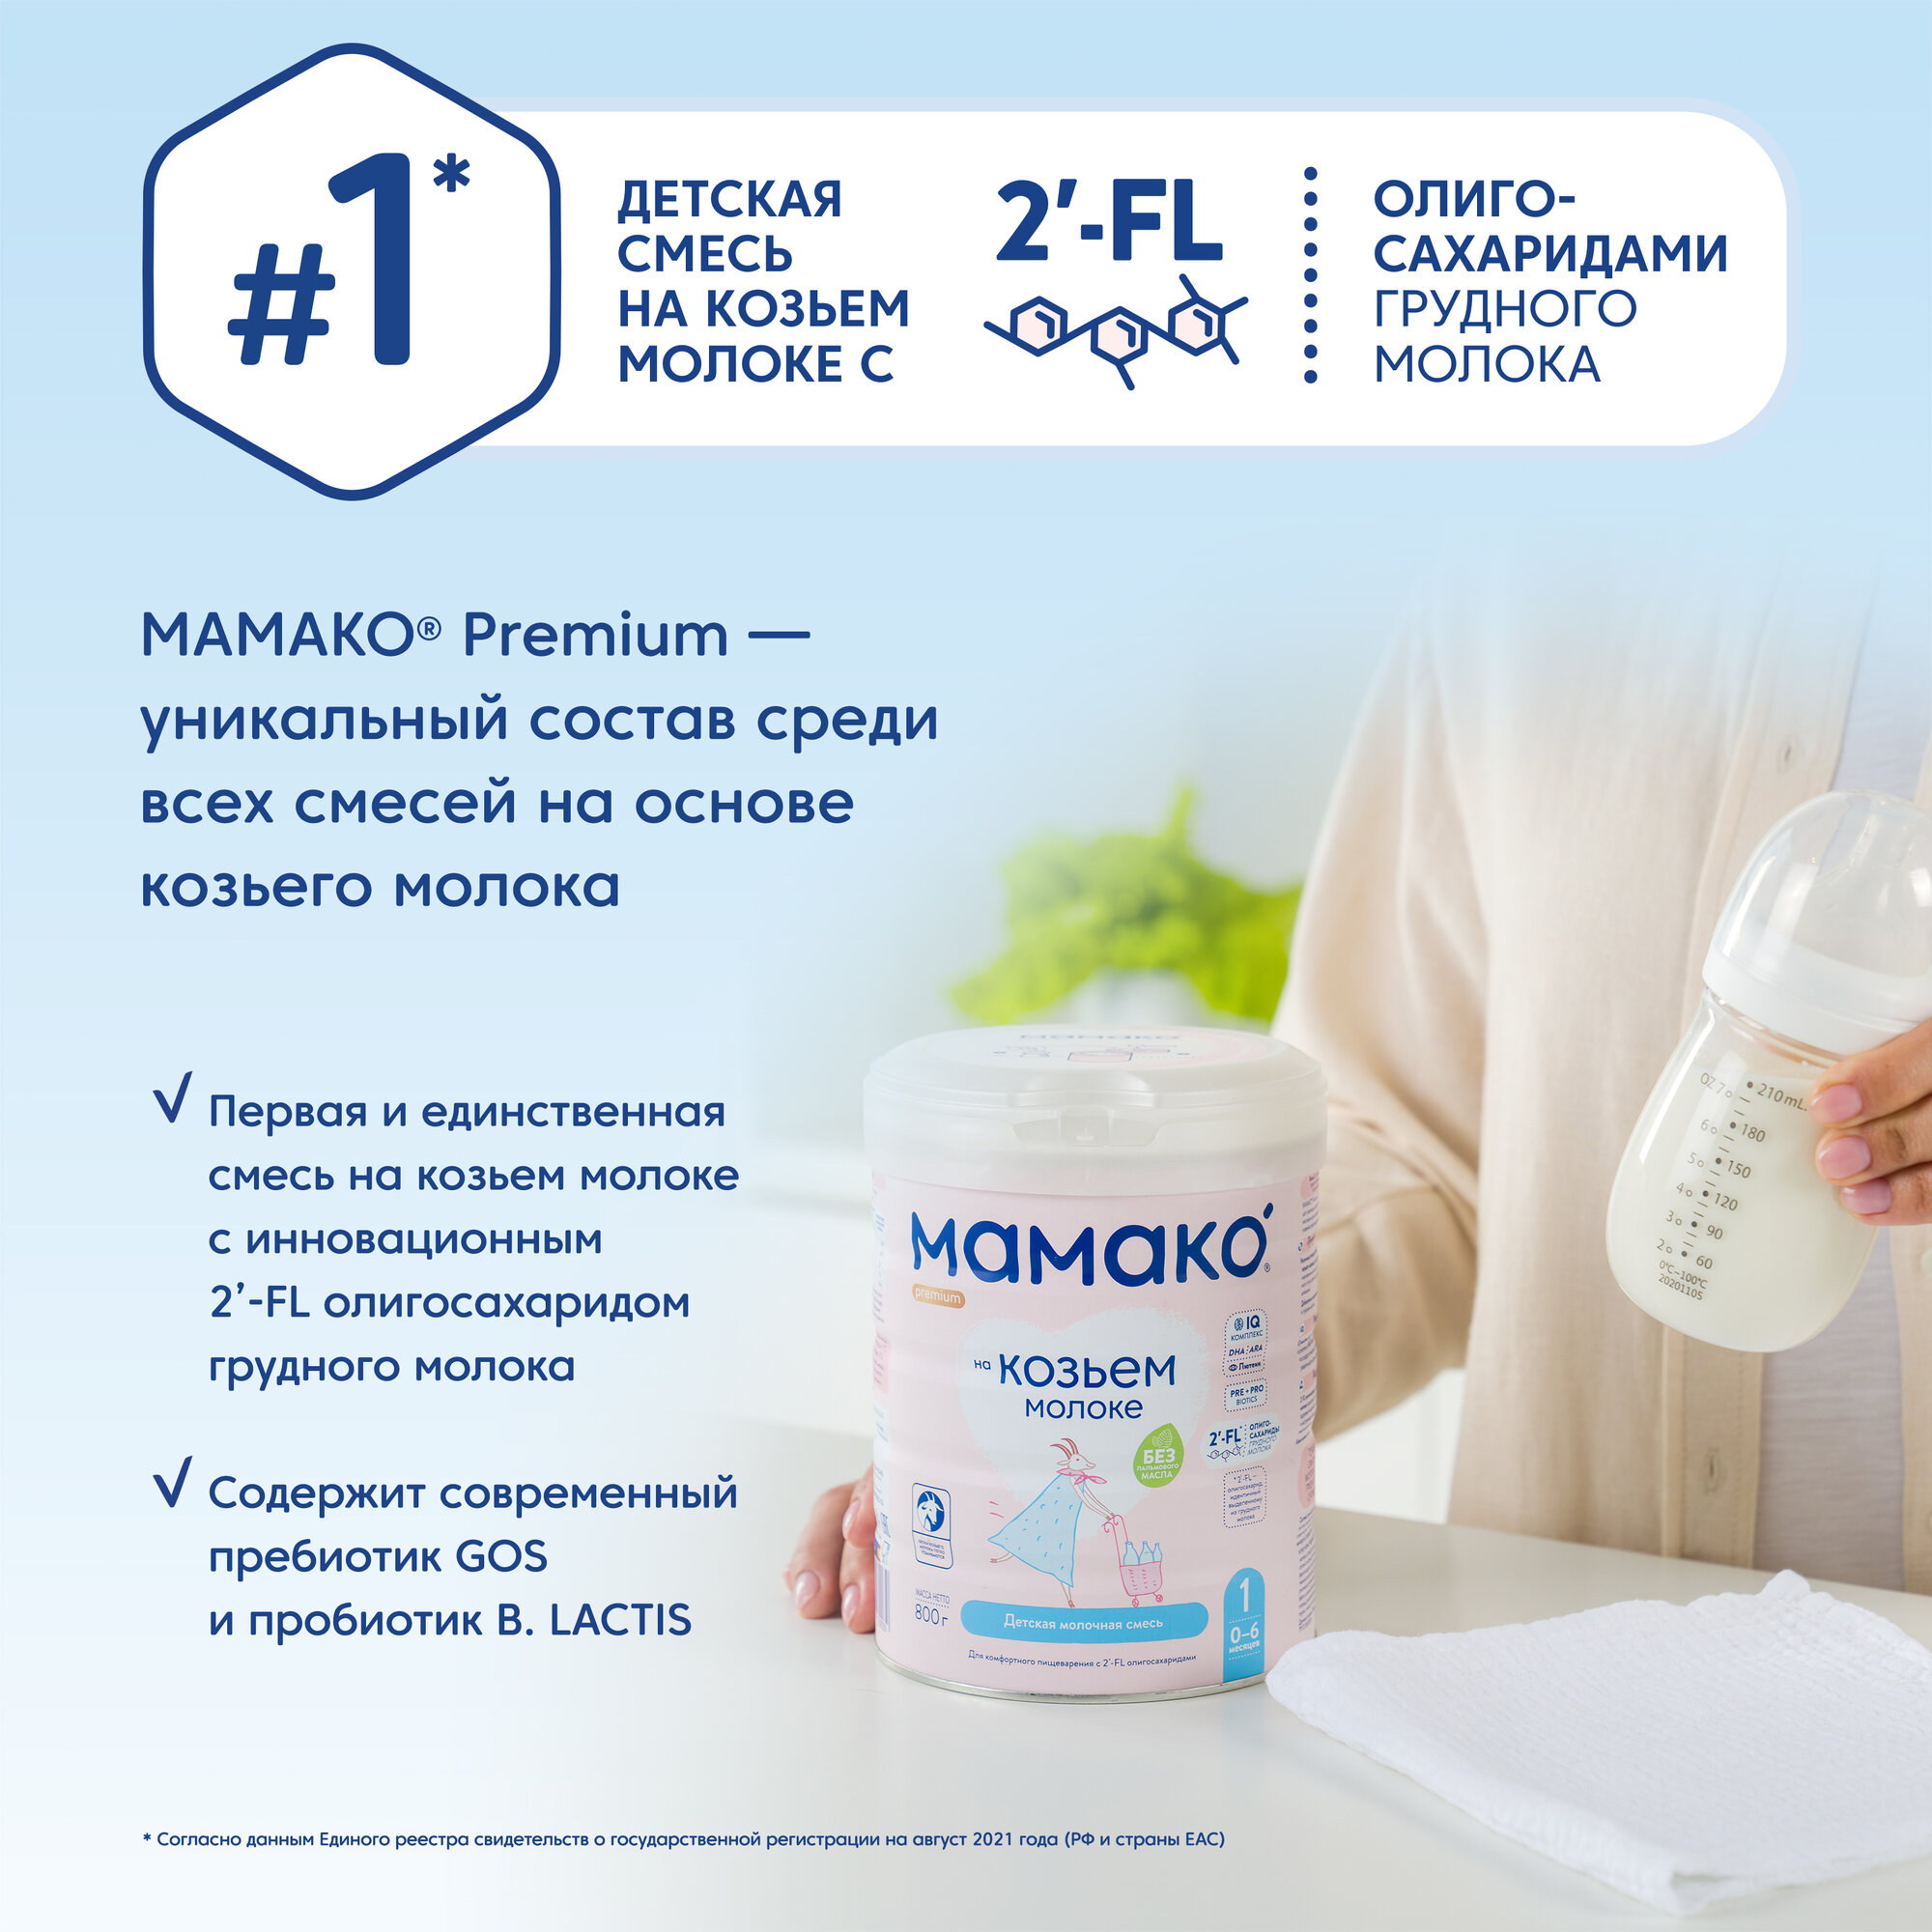 Сухая адаптированная молочная смесь Мамако Premium 1 на основе козьего молока, 400гр - фото №4